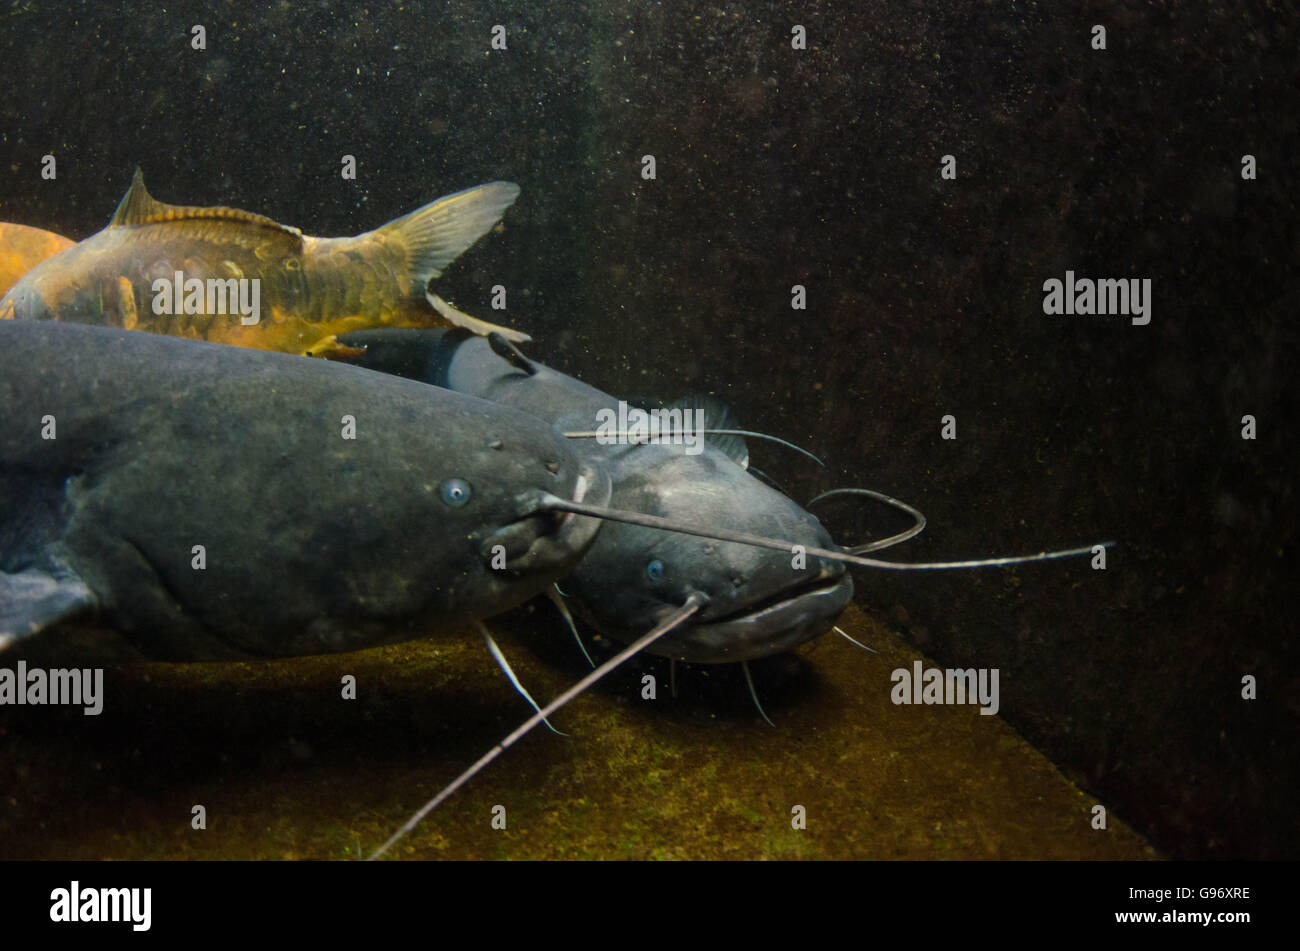 Wels Catfish Underwater Stock Photo